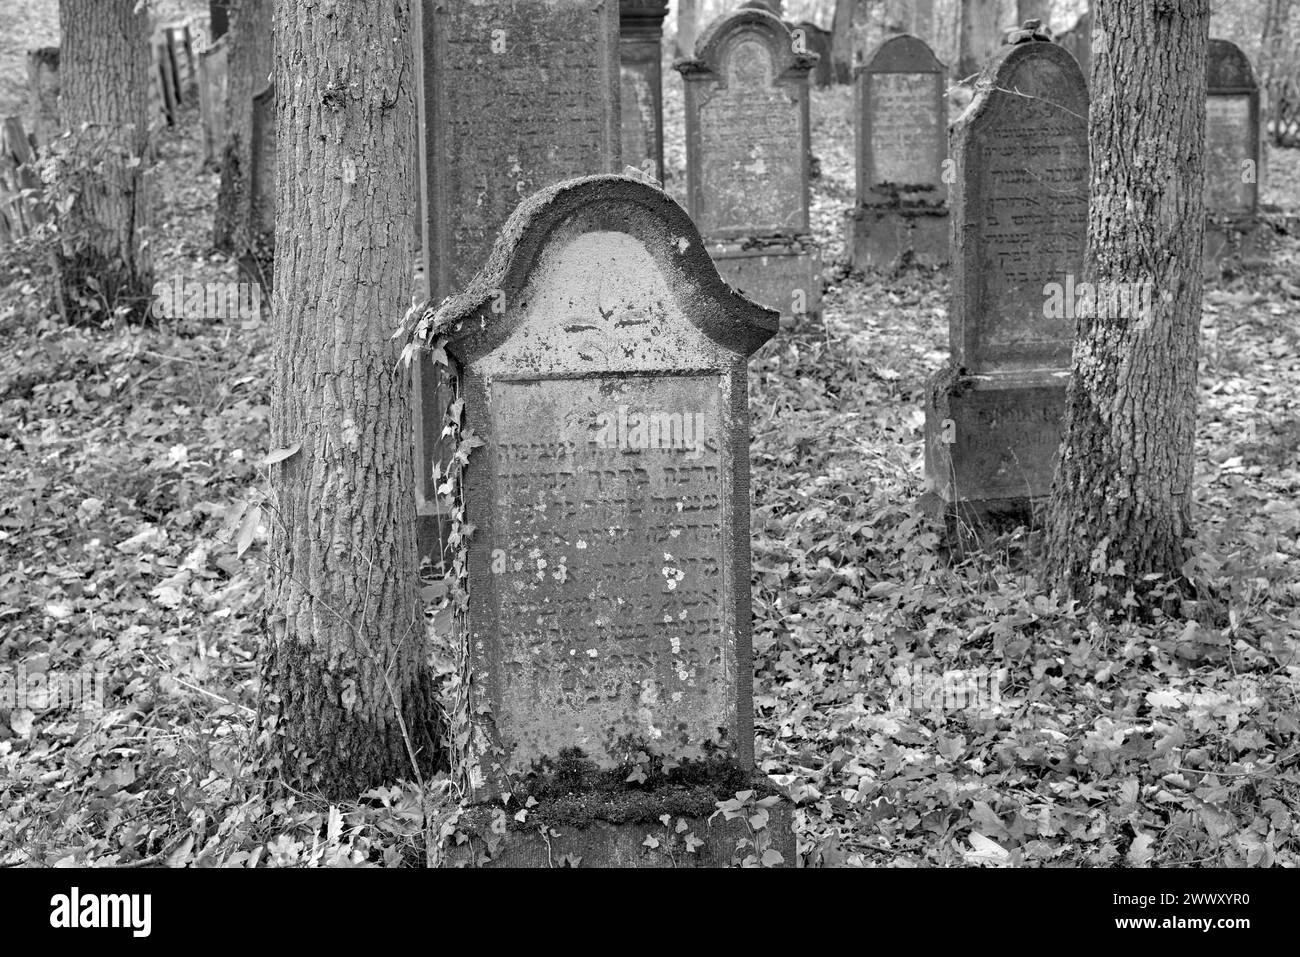 Cimetière juif, pierres tombales altérées, noir et blanc, village viticole Beilstein, Moselle, Rhénanie-Palatinat, Allemagne Banque D'Images